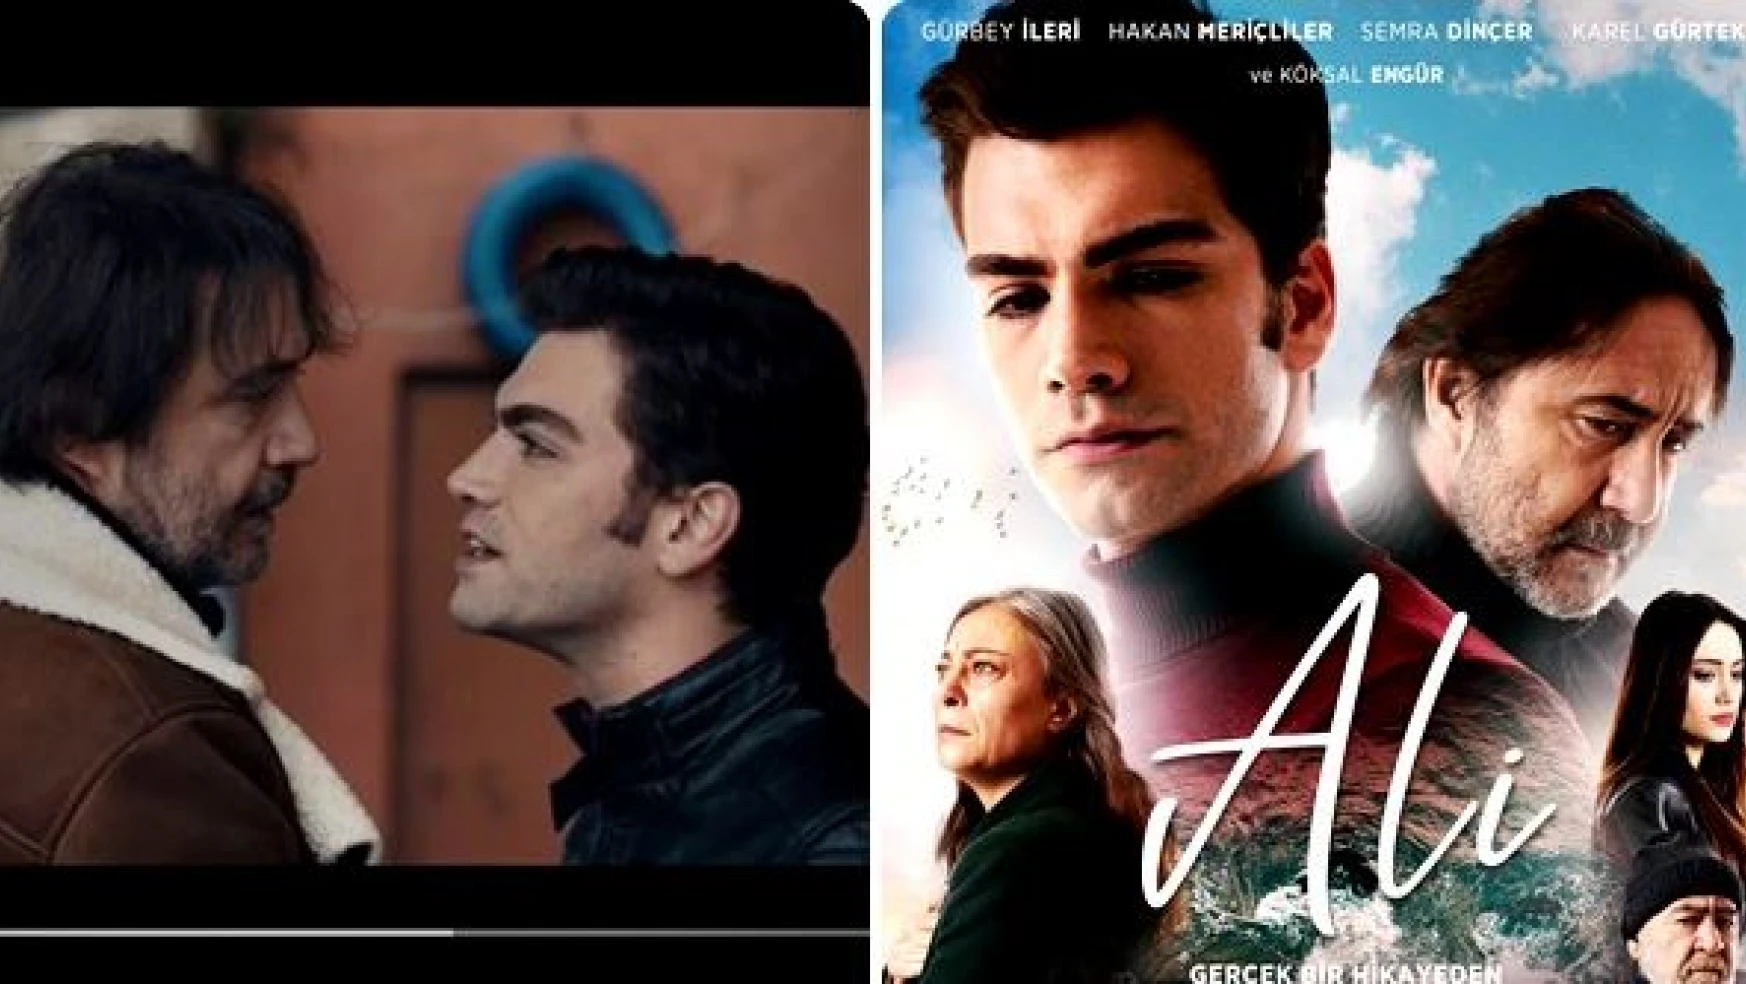 Amasra'da çekilen 'Ali' 22 Mart'ta sinemalarda 